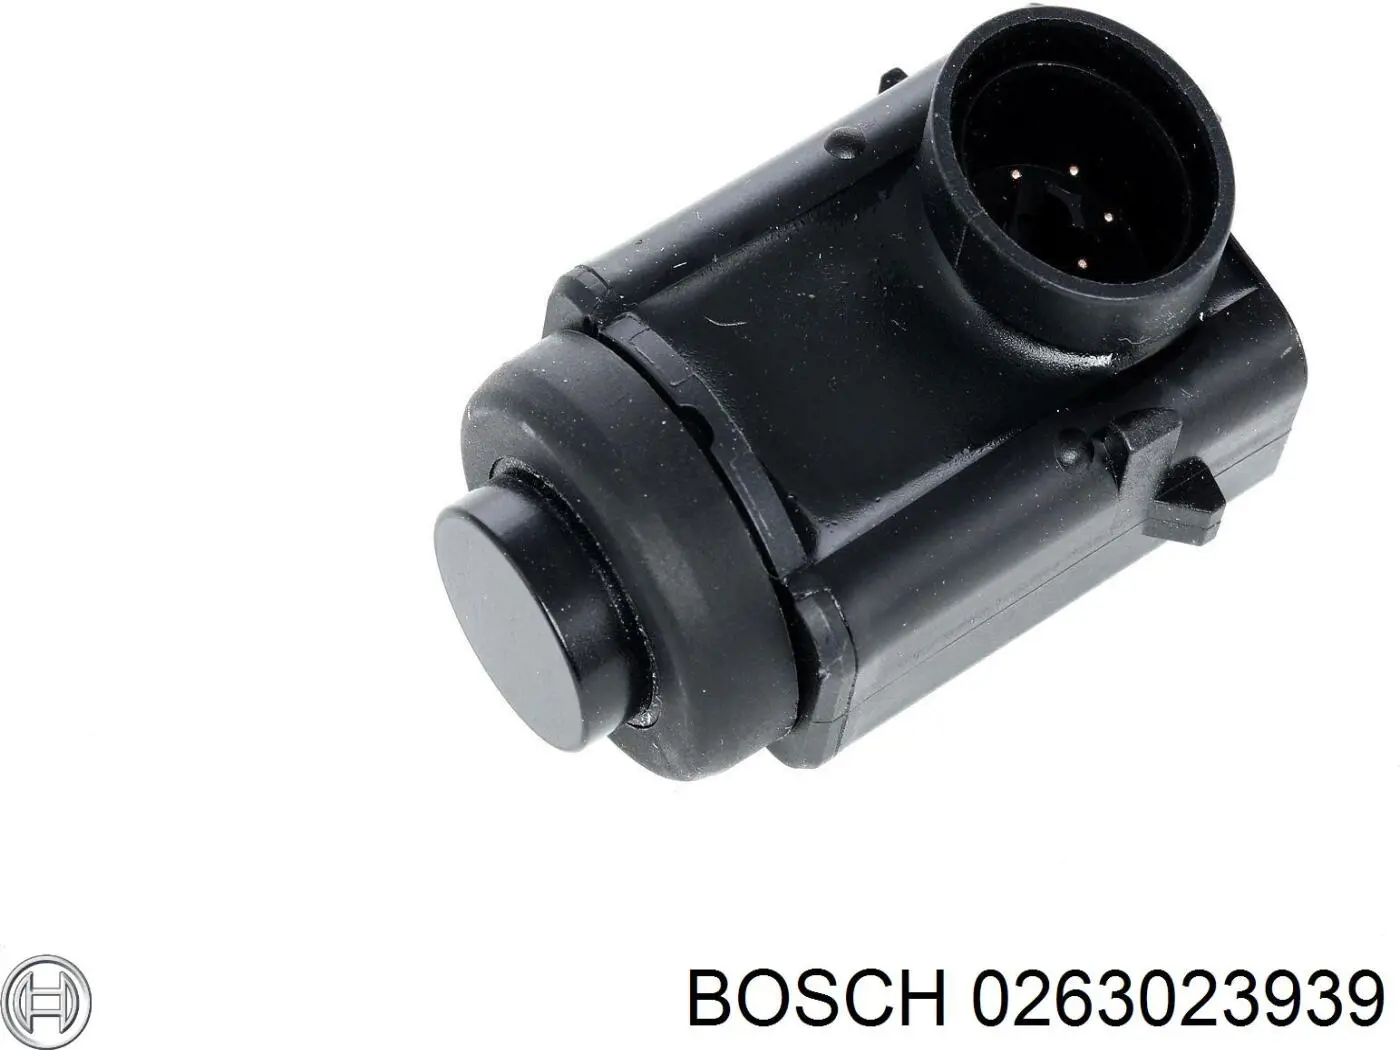 Sensor Alarma De Estacionamiento (packtronic) Frontal 0263023939 Bosch